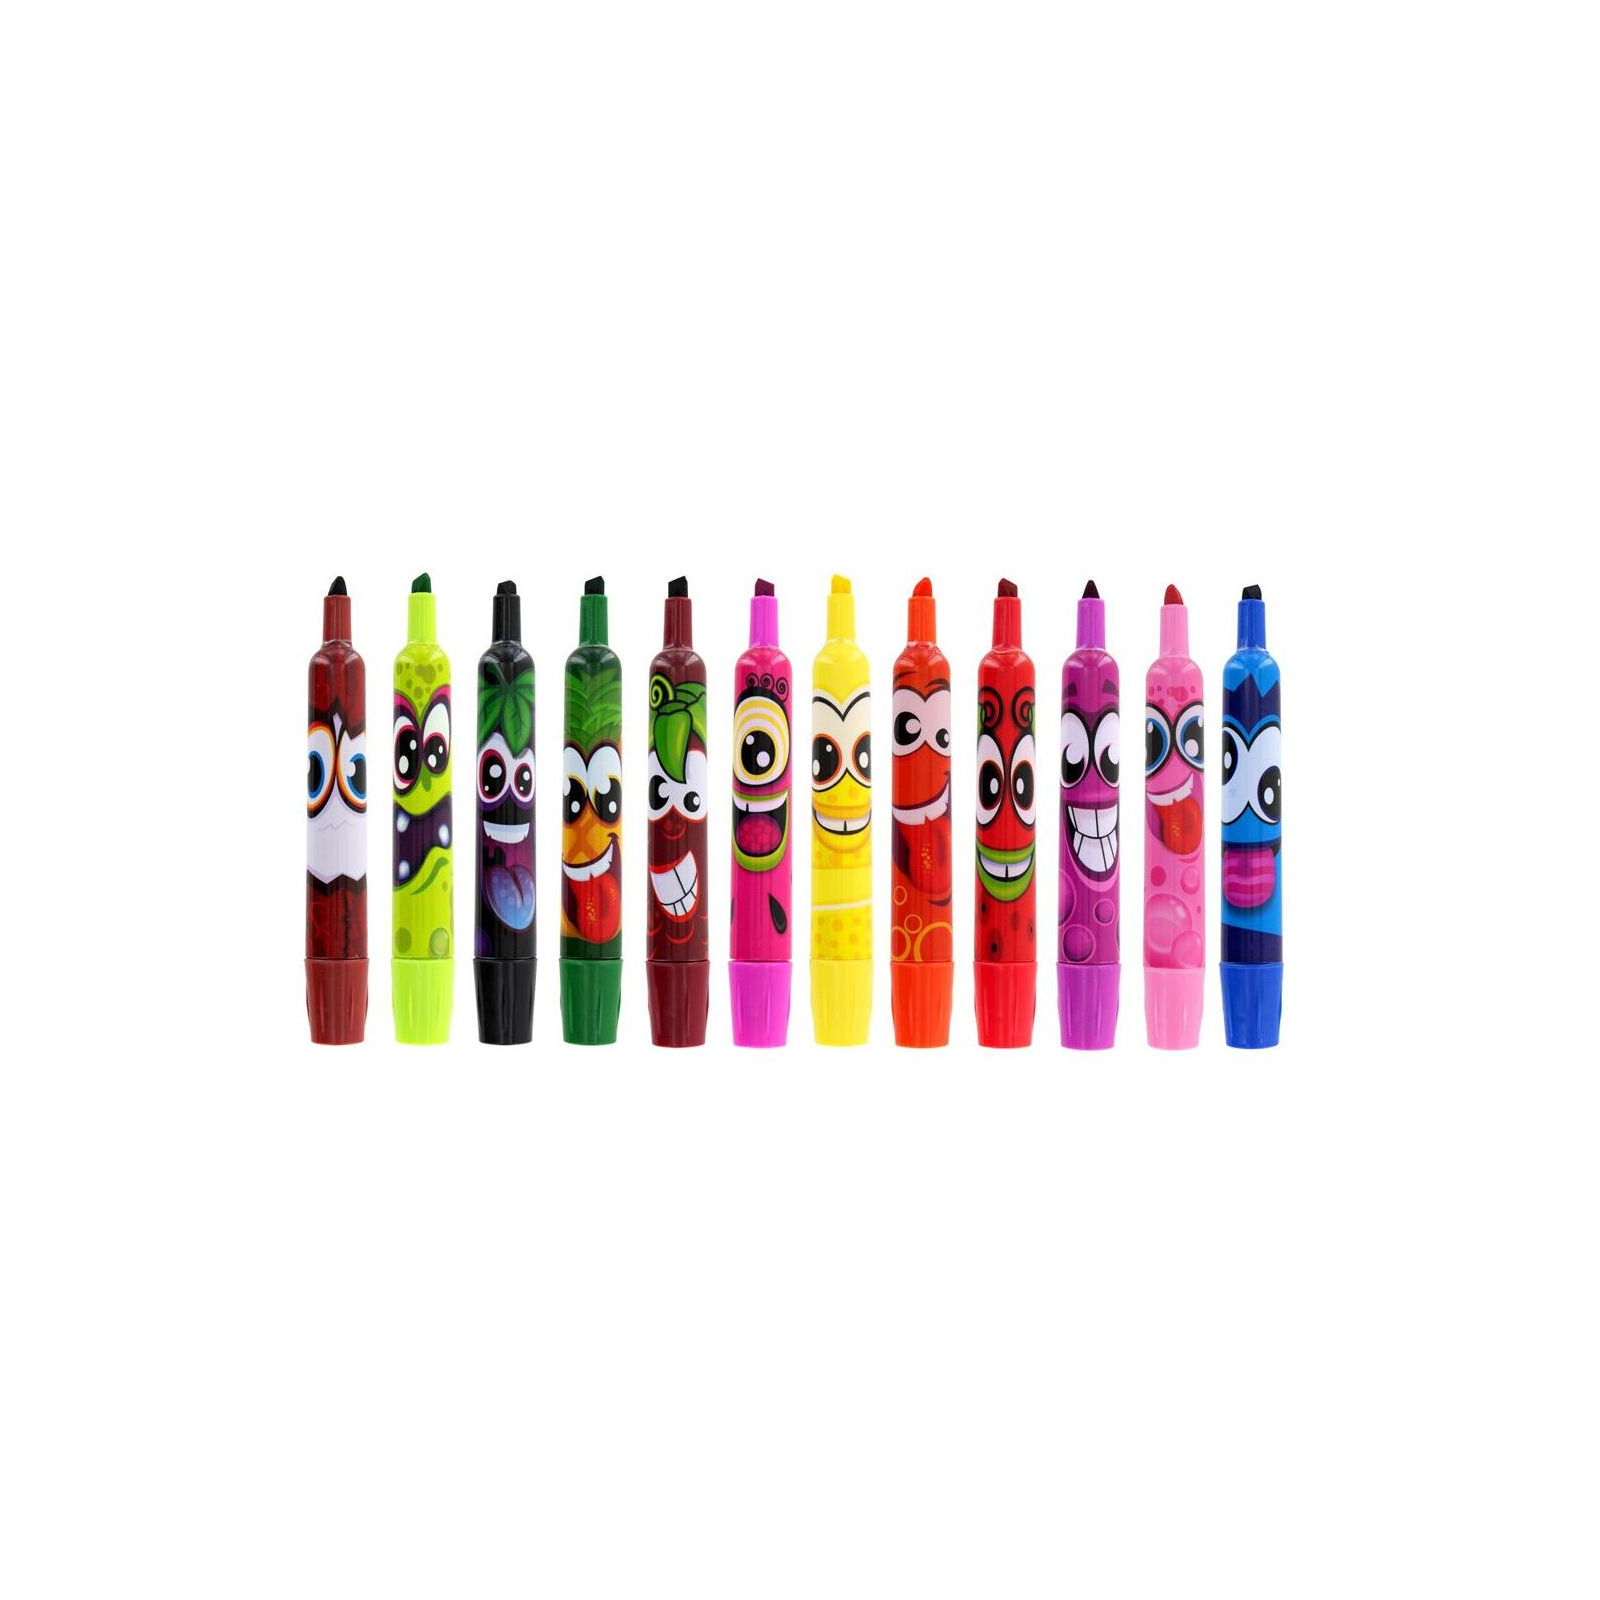 Набор для творчества Scentos ароматные маркери для рисования Штрих 12 цветов (40641) изображение 2